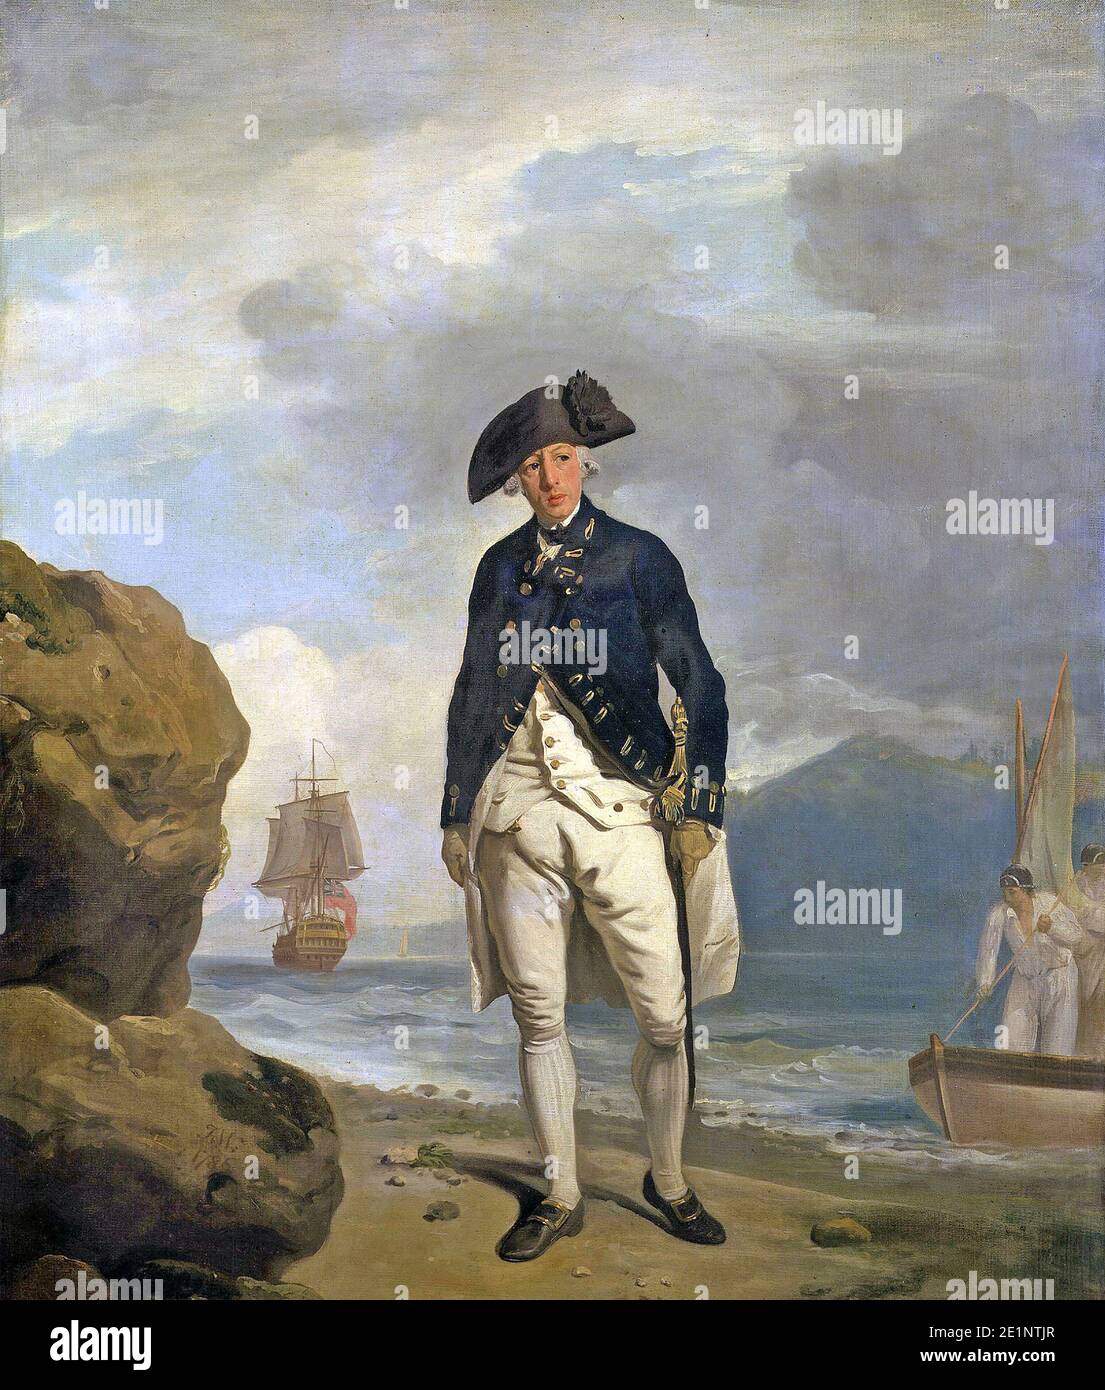 ARTHUR PHILLIP (1738-1814) Officier de la Marine royale anglaise et premier gouverneur de la Nouvelle-Galles du Sud dans un tableau de Francis Wheatley en 1786. Banque D'Images